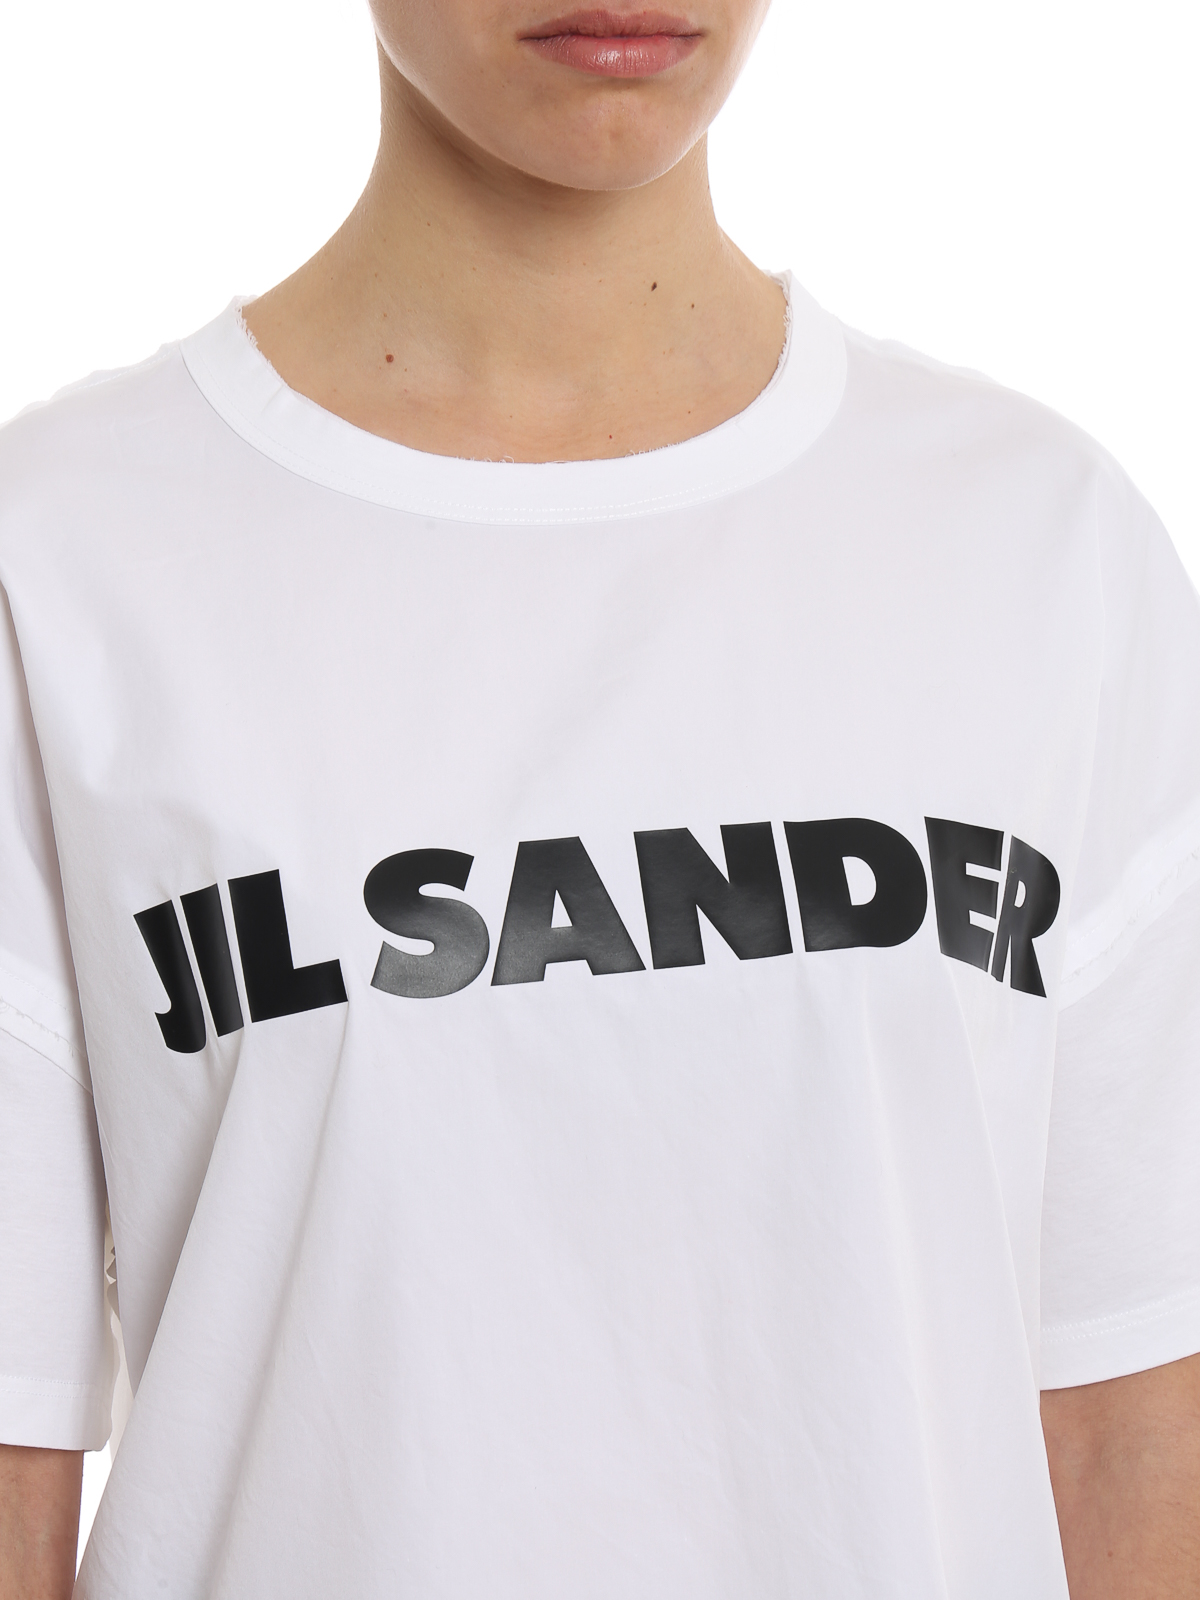 人気定番の Jil Sander Tシャツ Tシャツ・カットソー 色・サイズを選択:ブラック - oroagri.eu